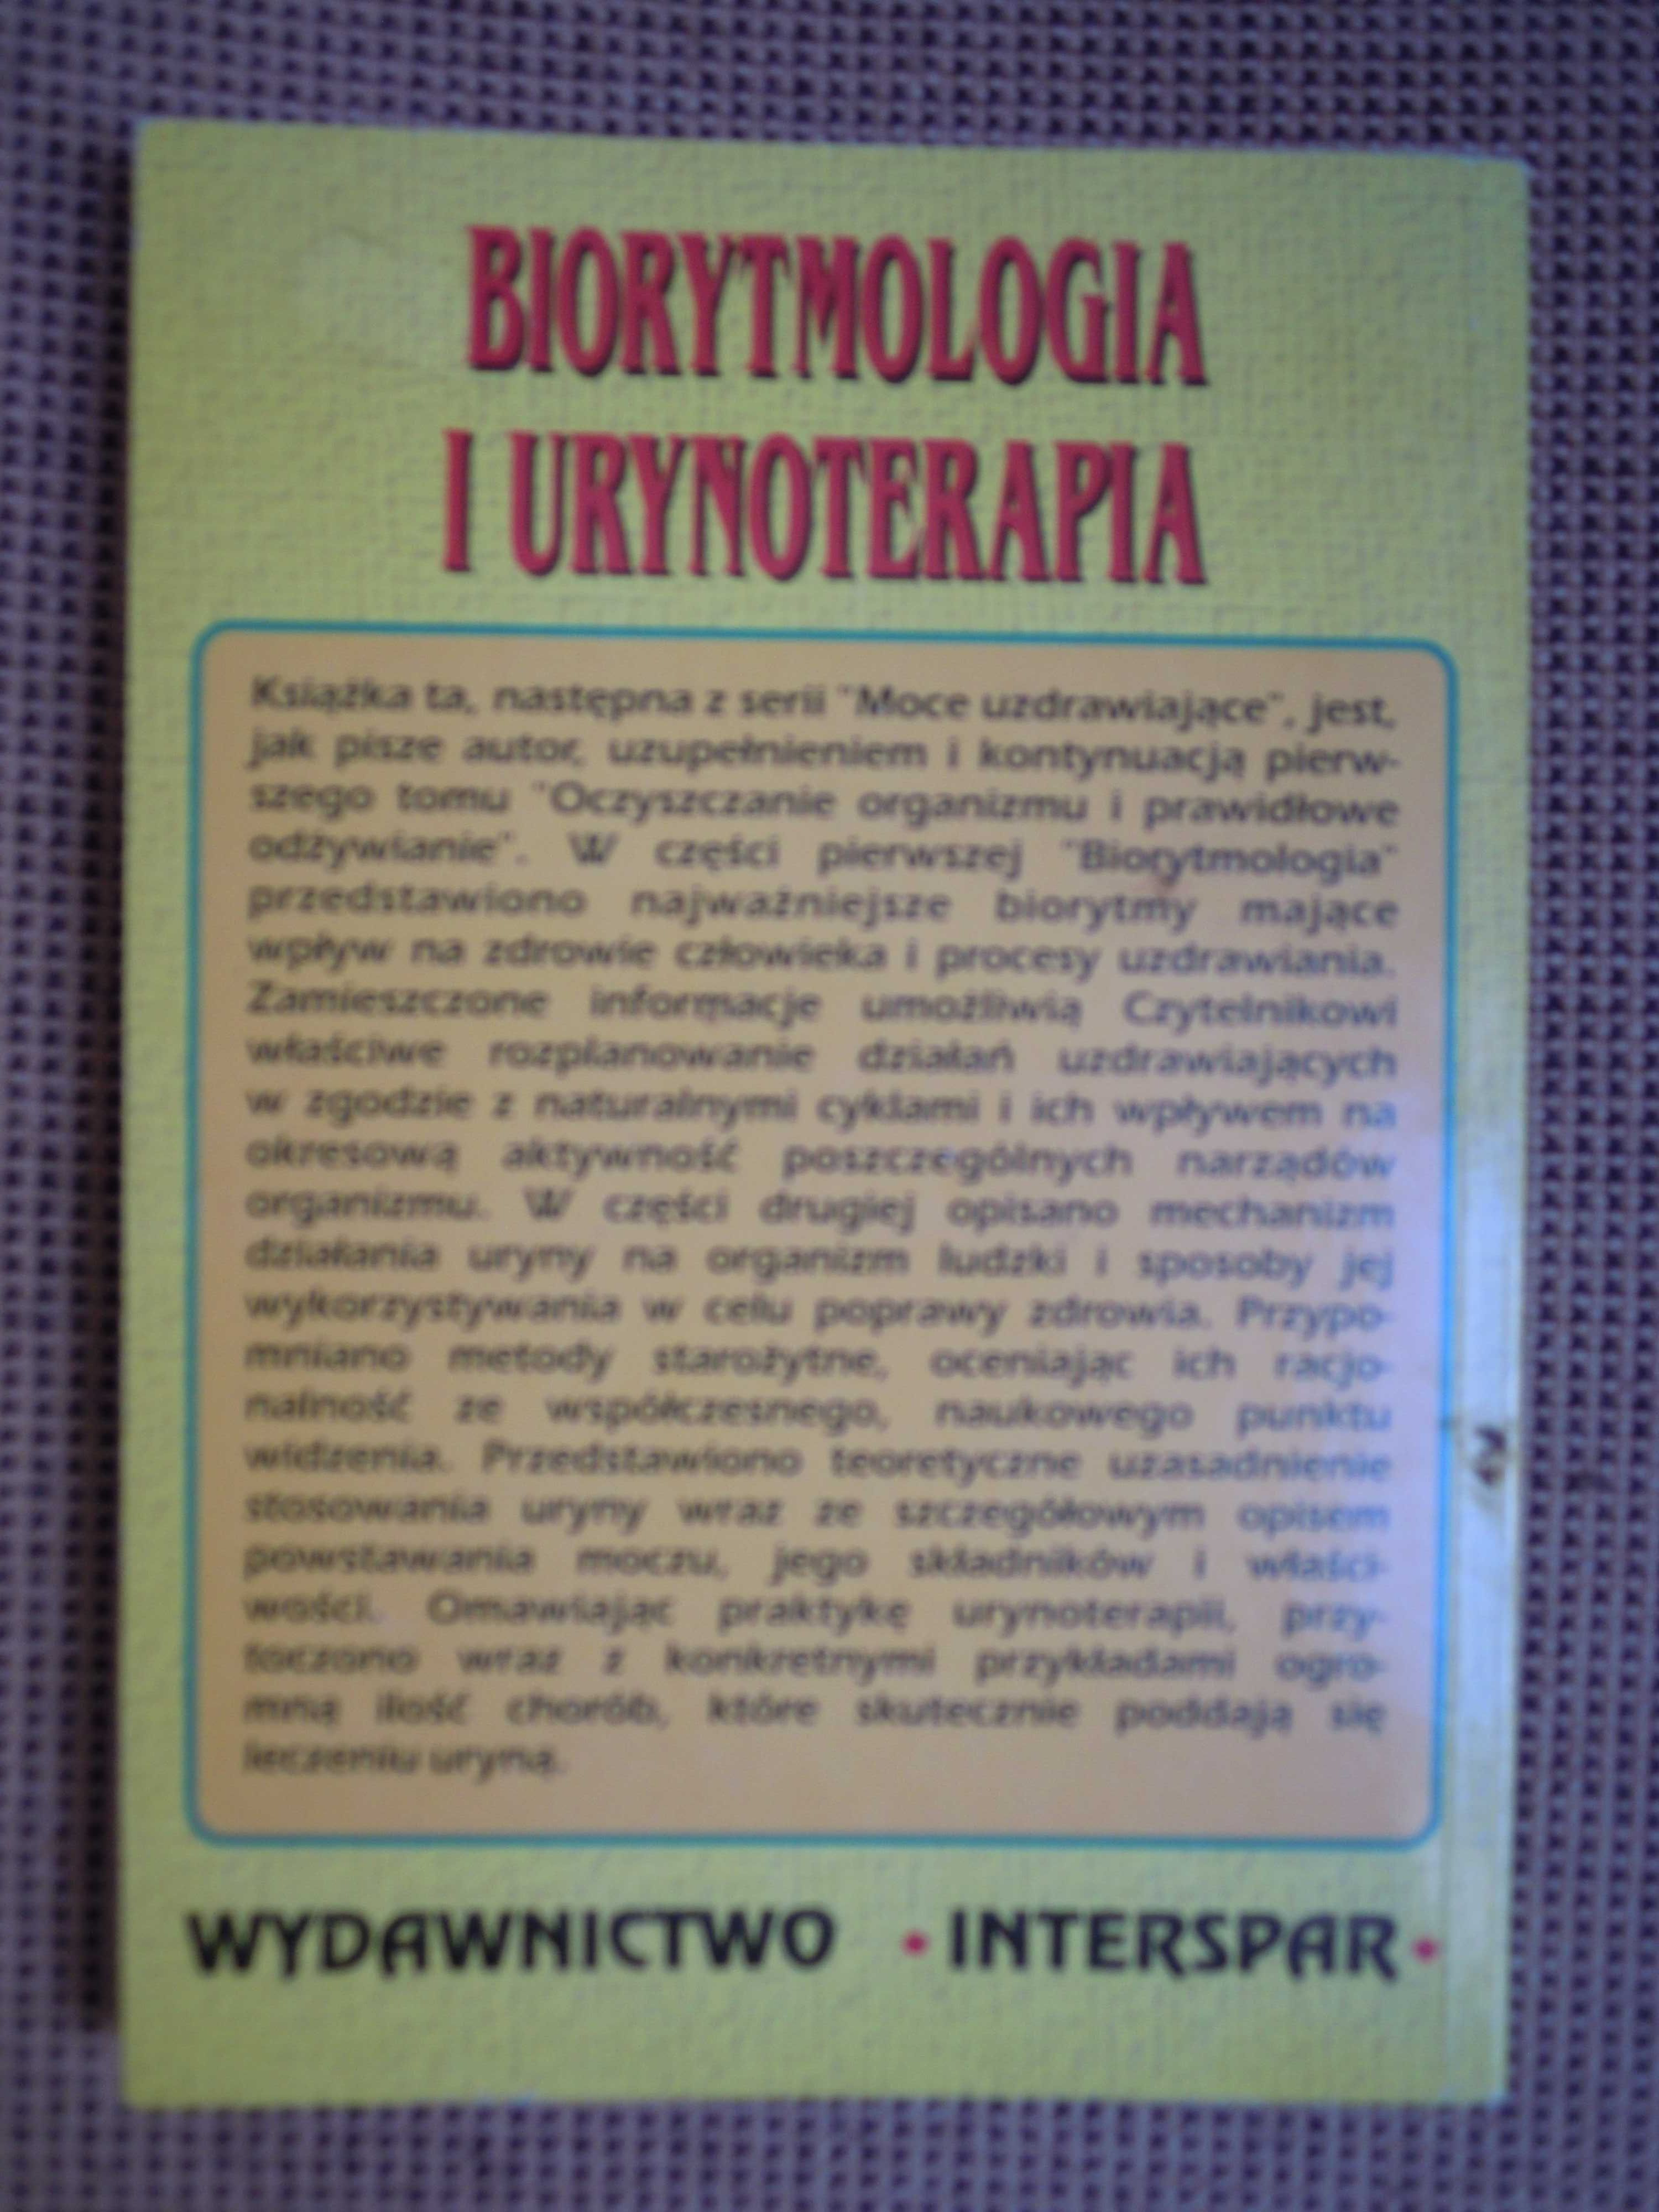 "Biorytmologia i urynoterapia" G.P. Michałow